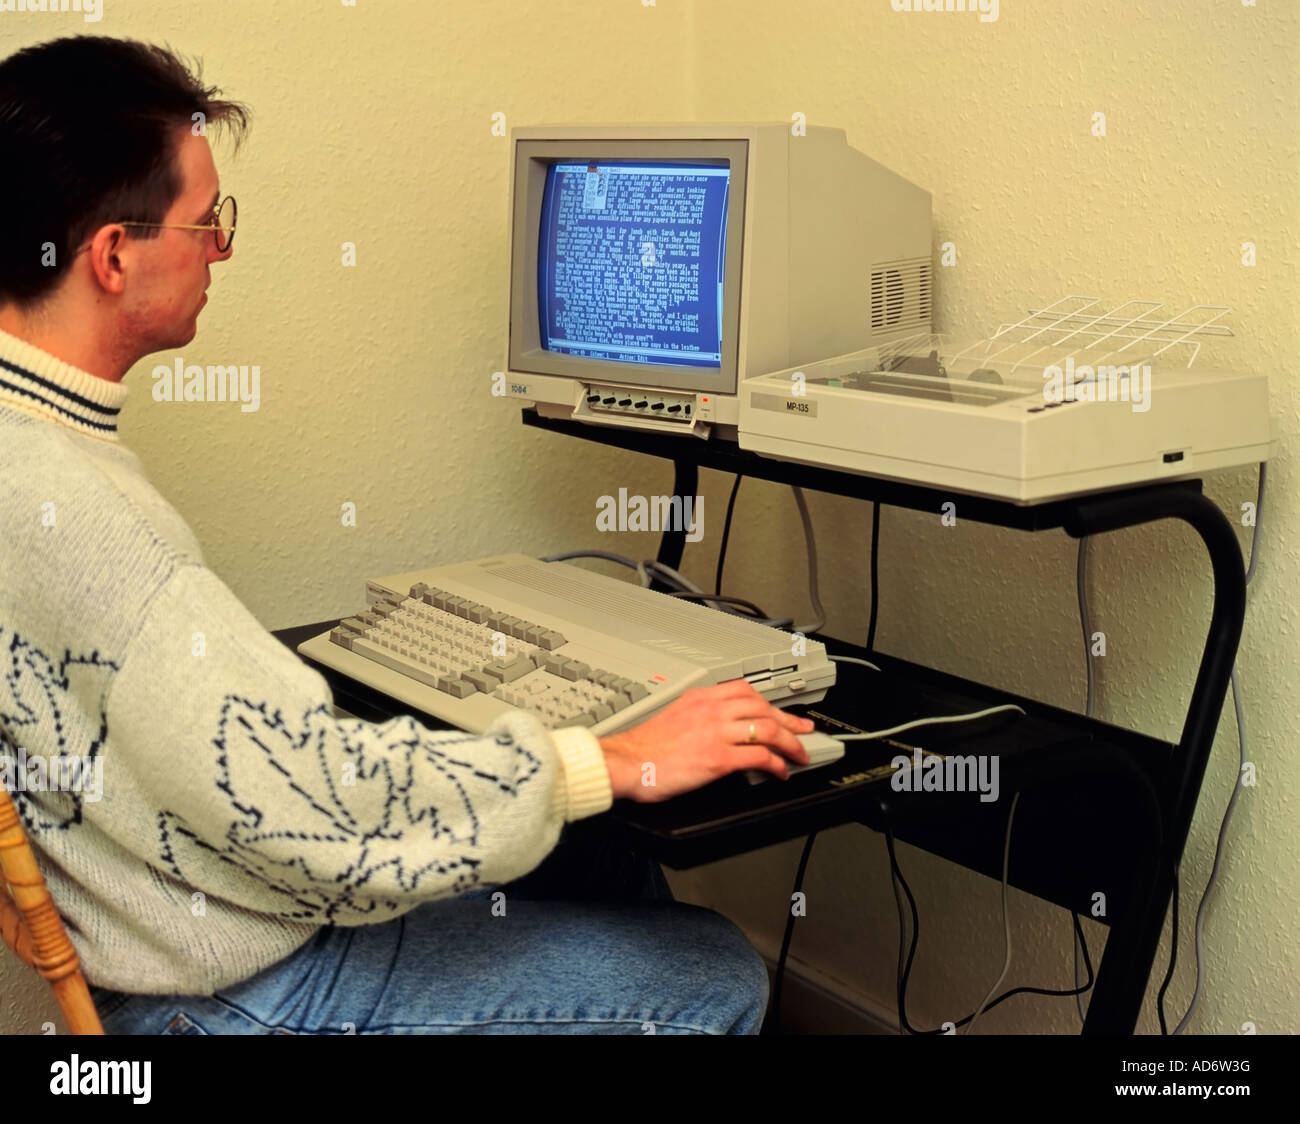 Travailler à domicile dans les années 1980 sur un ordinateur de traitement de texte Amiga 500 d'époque Banque D'Images